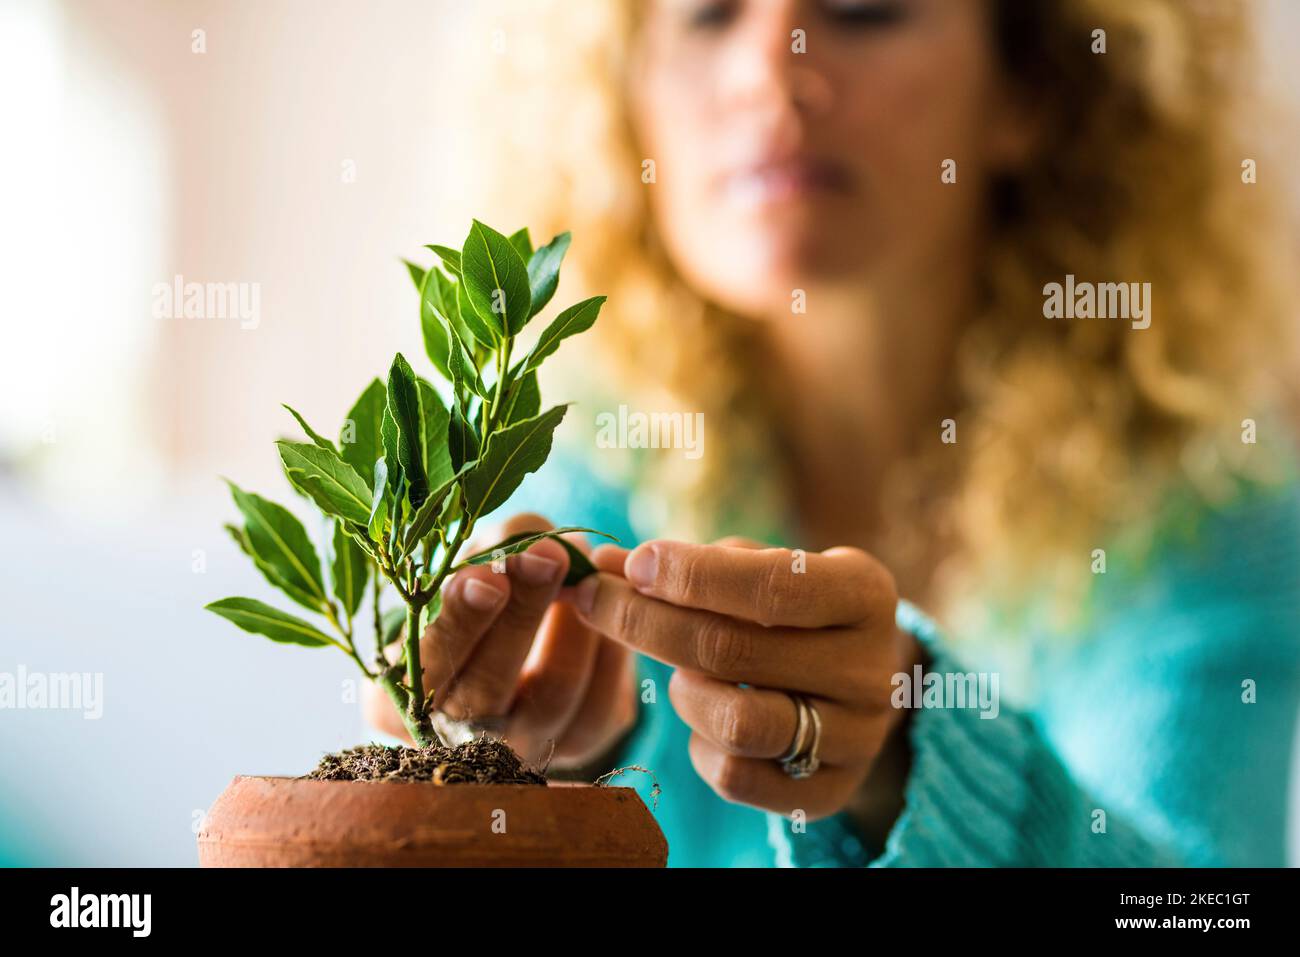 primo piano e ritratto della donna che si prende cura di una piccola pianta all'interno della sua casa - pianta che cresce Foto Stock